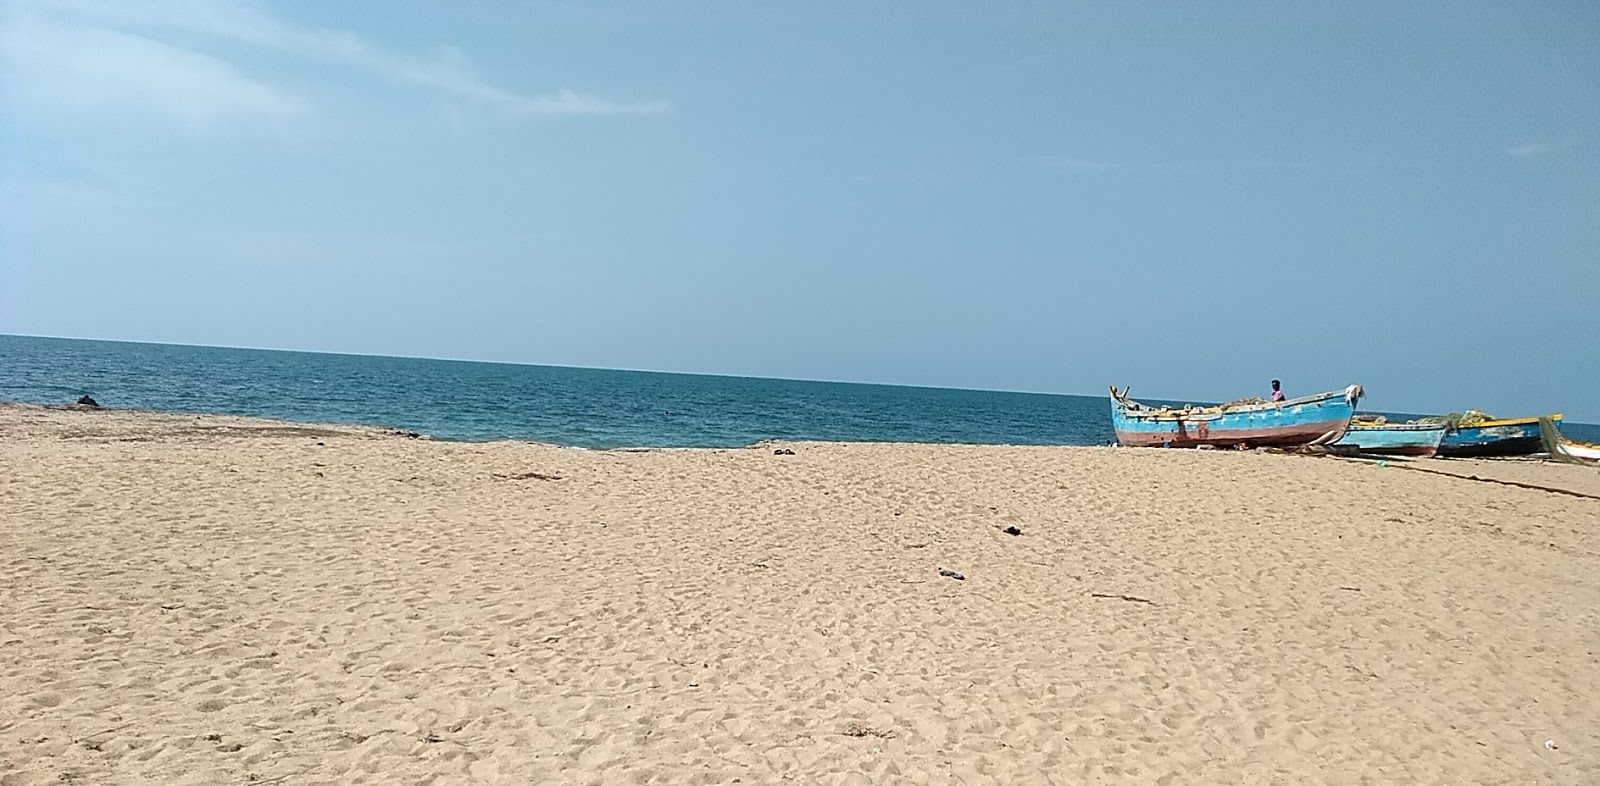 Pudumadam Beach'in fotoğrafı vahşi alan